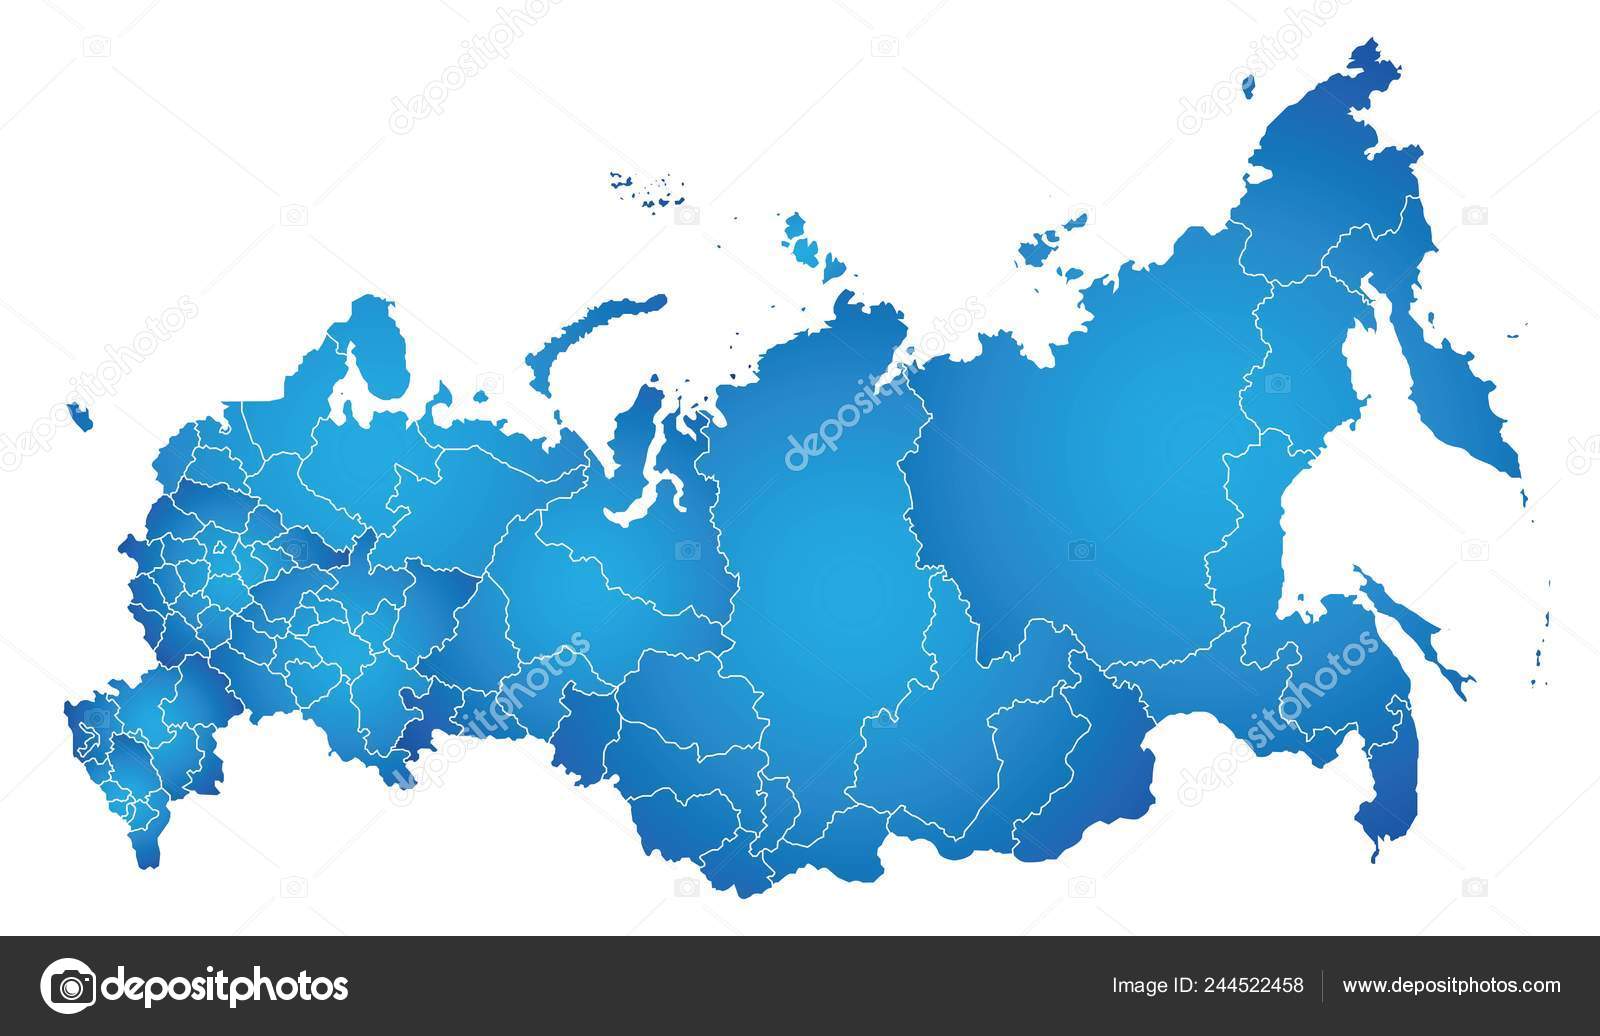 Vetores de Federação Russa Detalhou Mapa Com Regiões E Cidades Do País e  mais imagens de Mapa - iStock